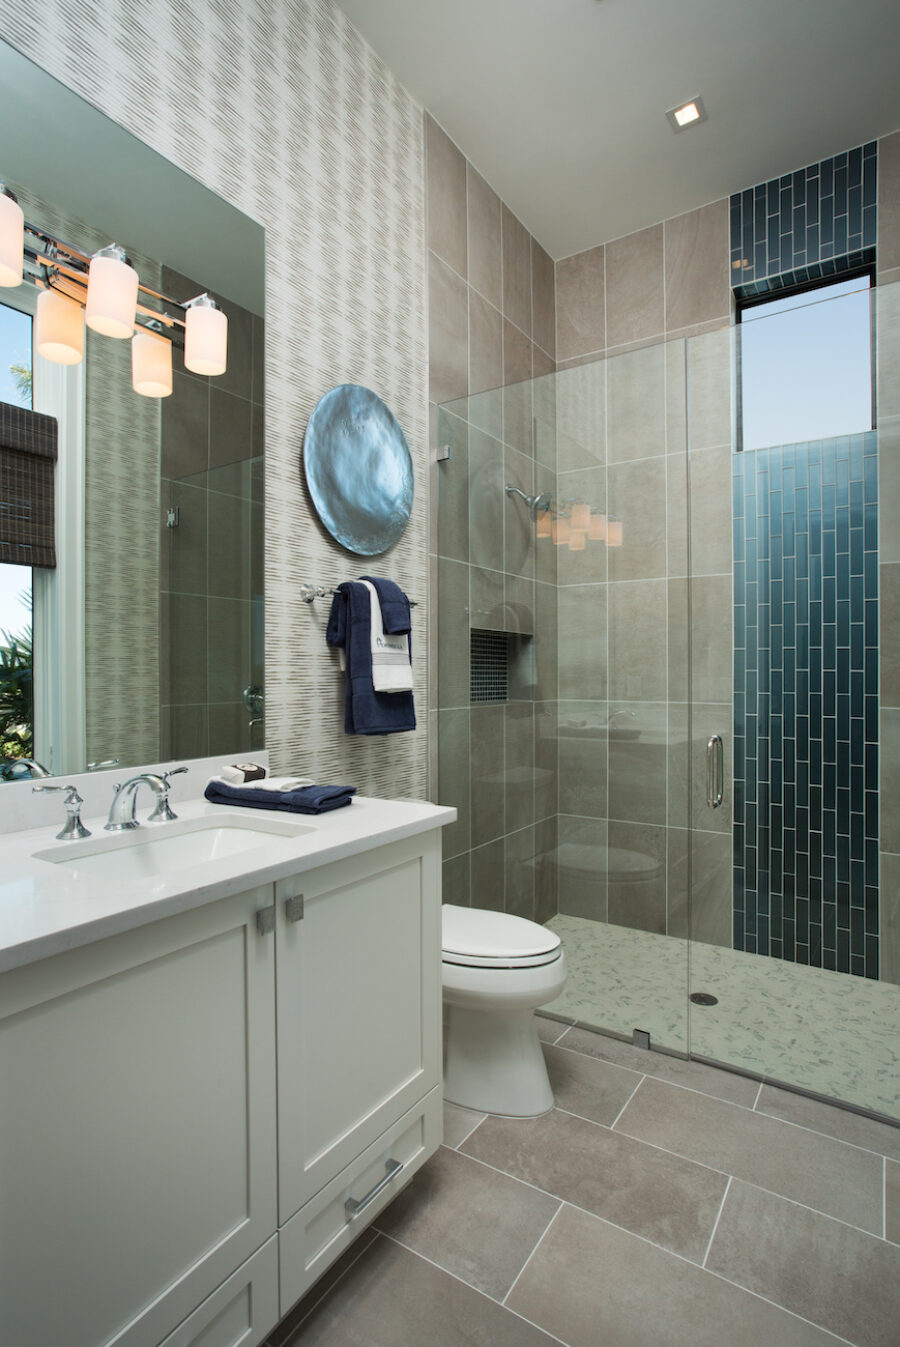 design-west-bathroom-interior-design-naples-fl